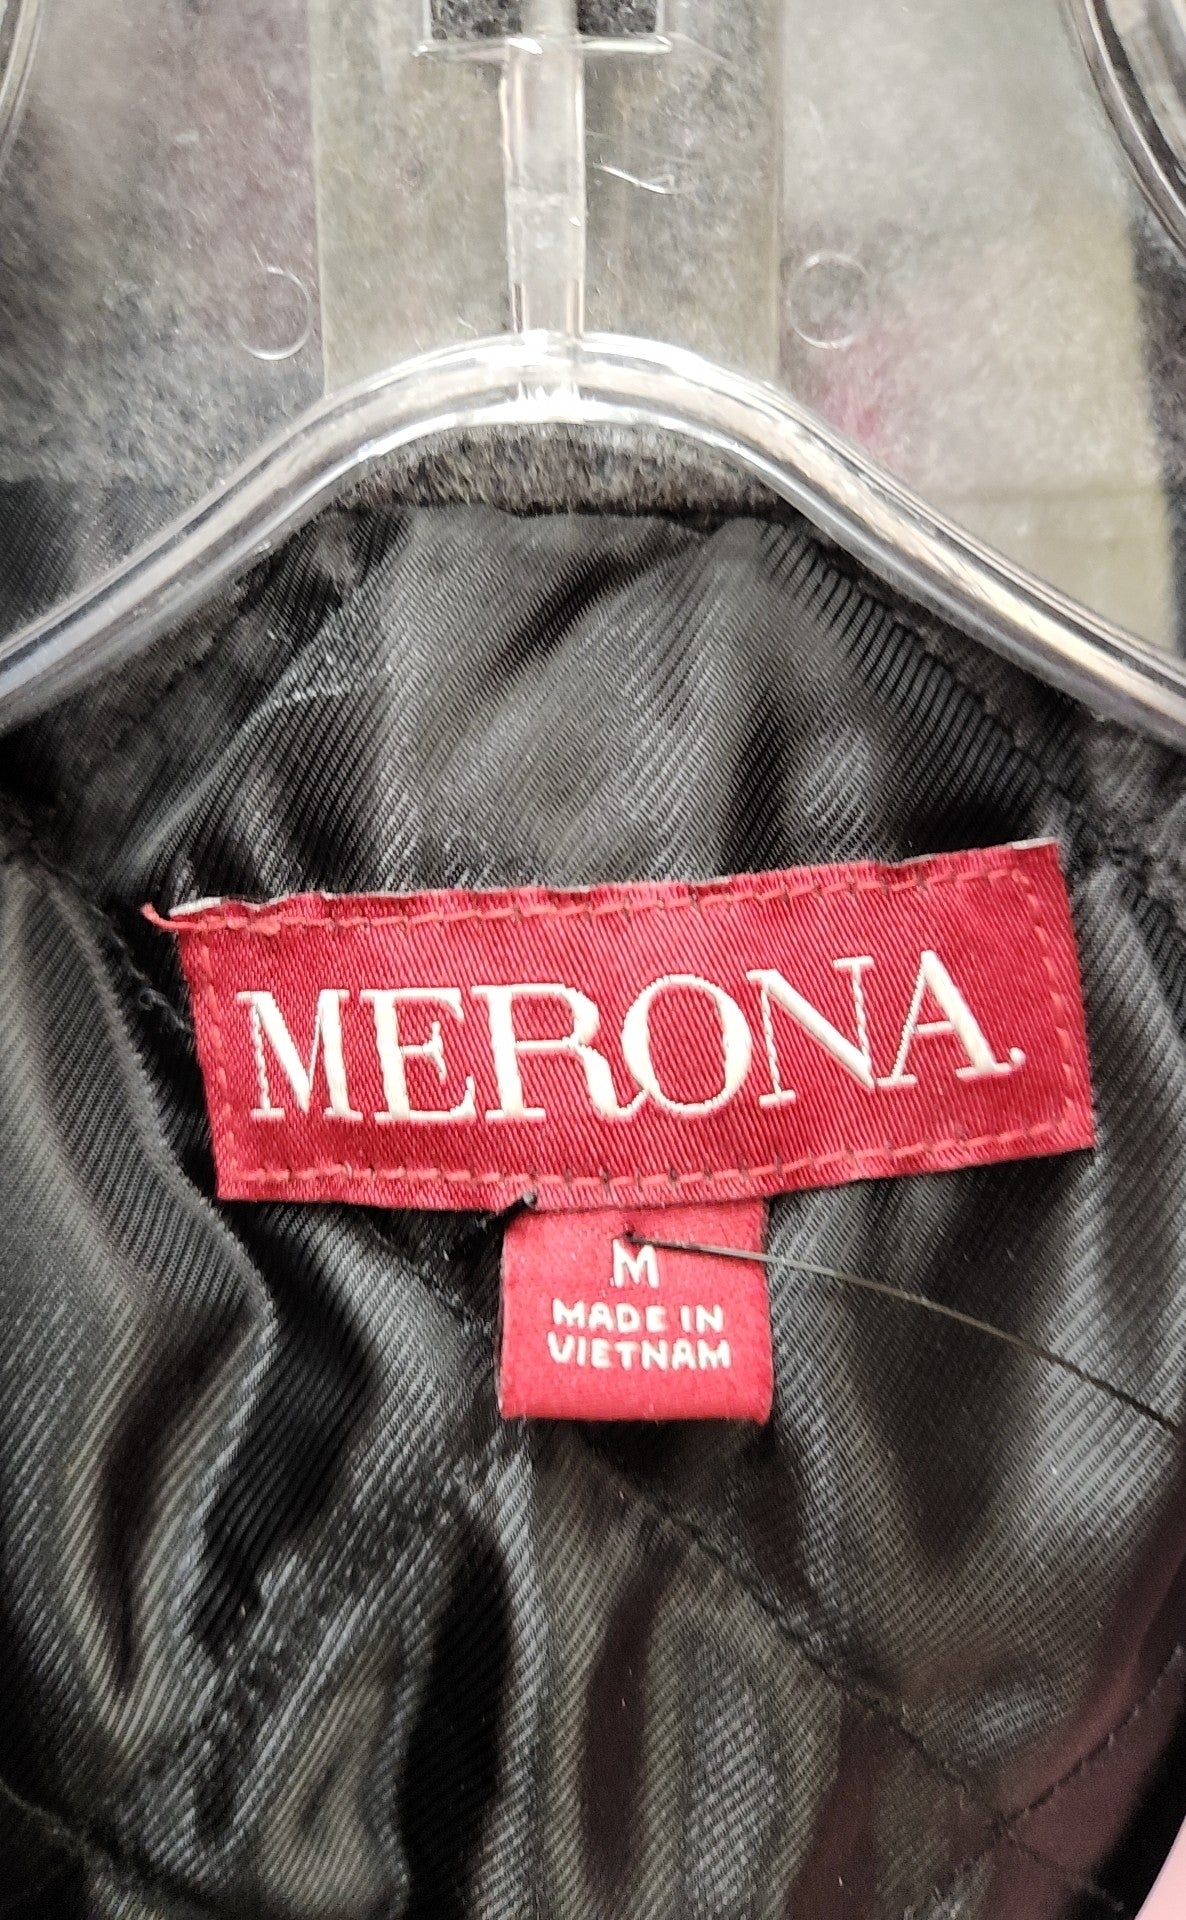 Merona Men's Size M Gray Coat